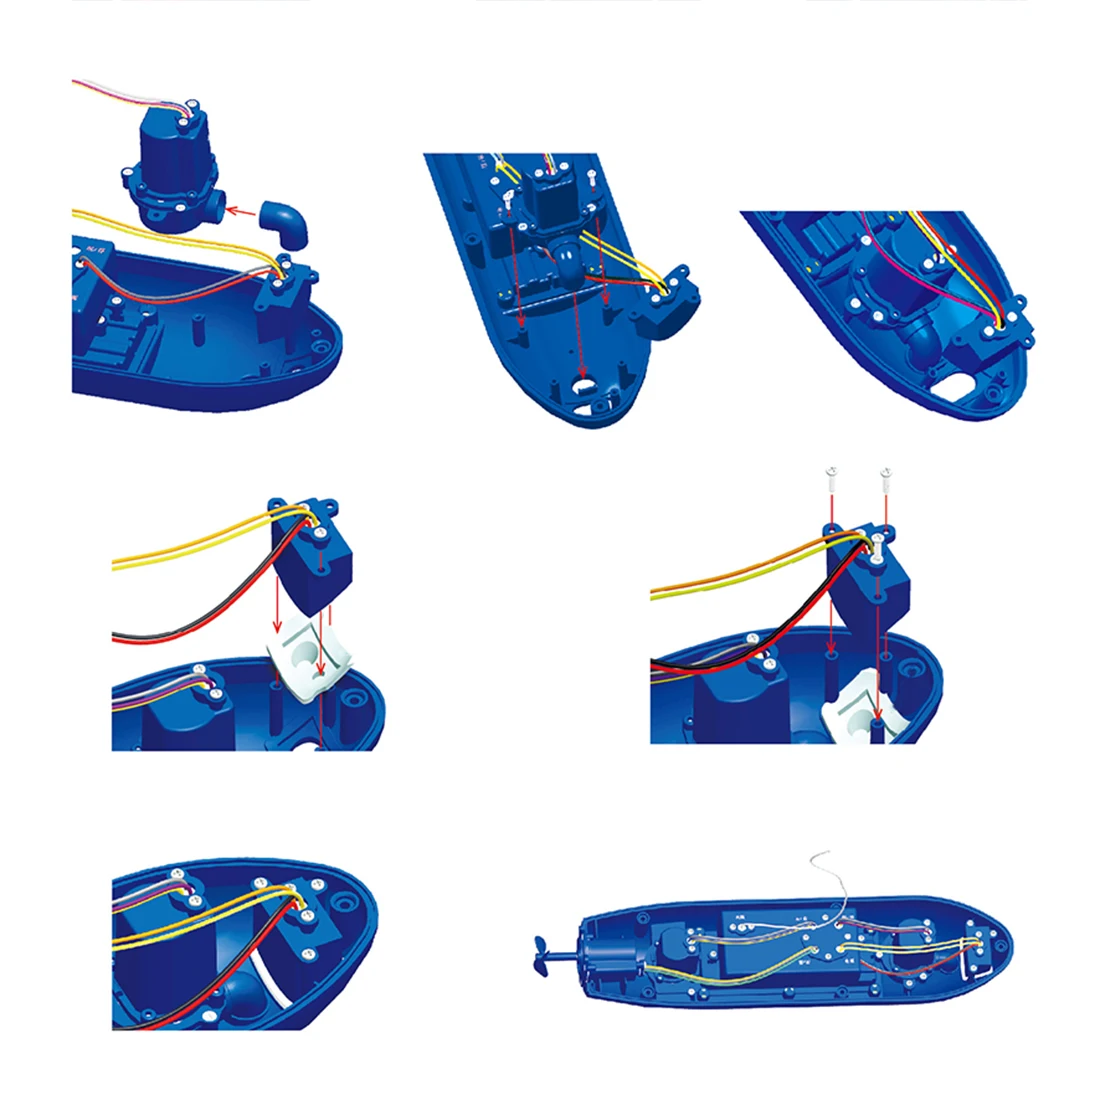 Забавная радиоуправляемая мини подводная лодка 6 каналов дистанционного управления под водой корабль радиоуправляемая лодка модель Детский развивающий ствол игрушка подарок для детей